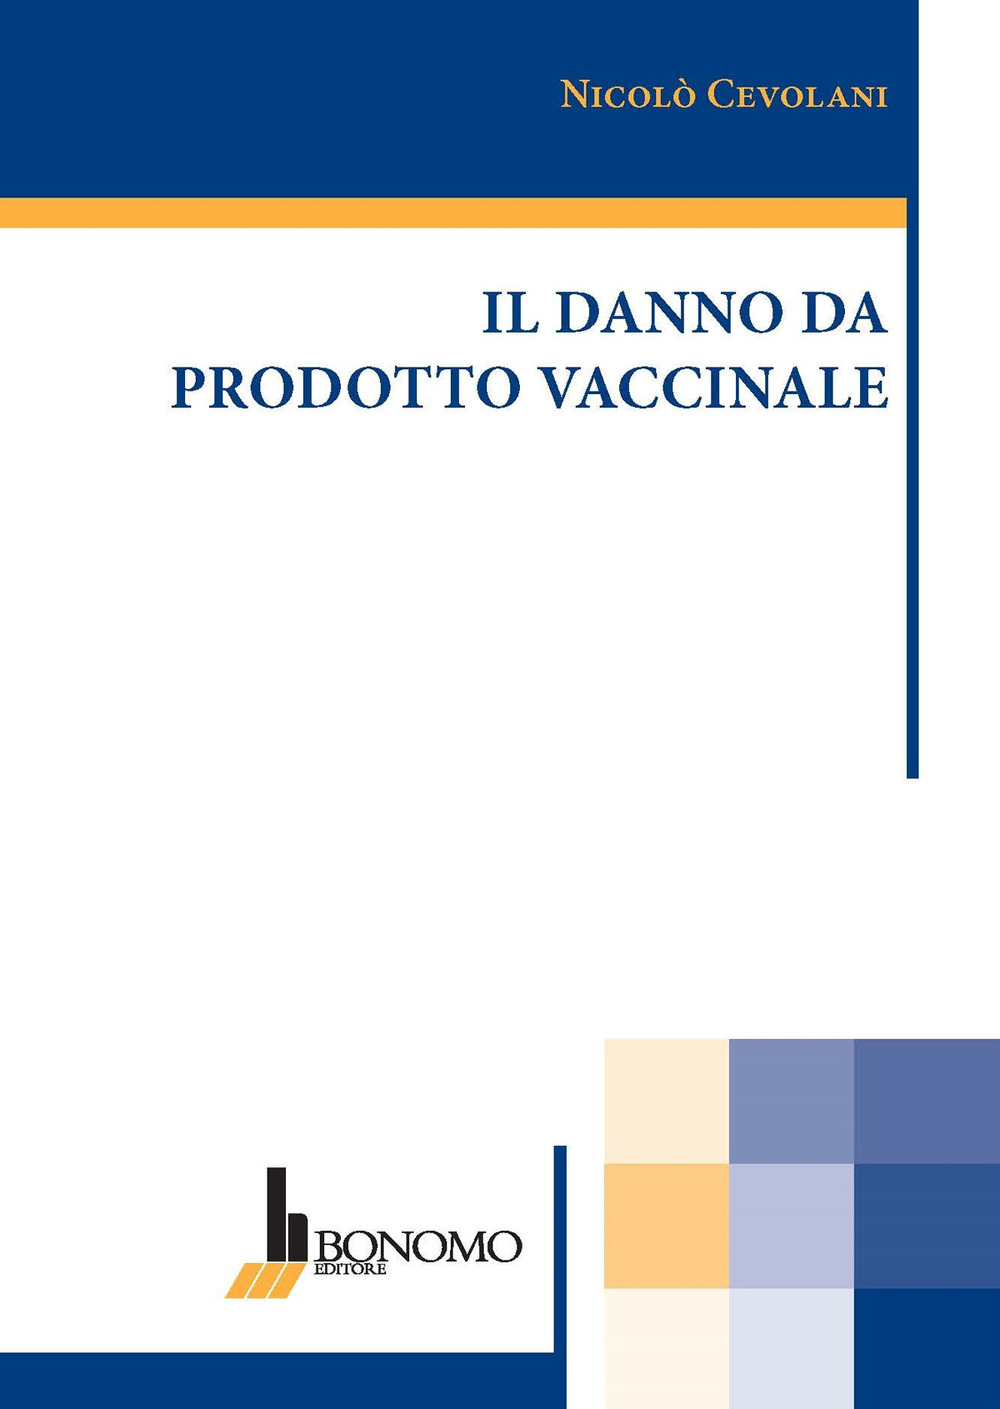 Libri Cevolani Nicolo - Il Danno Da Prodotto Vaccinale NUOVO SIGILLATO, EDIZIONE DEL 01/06/2021 SUBITO DISPONIBILE